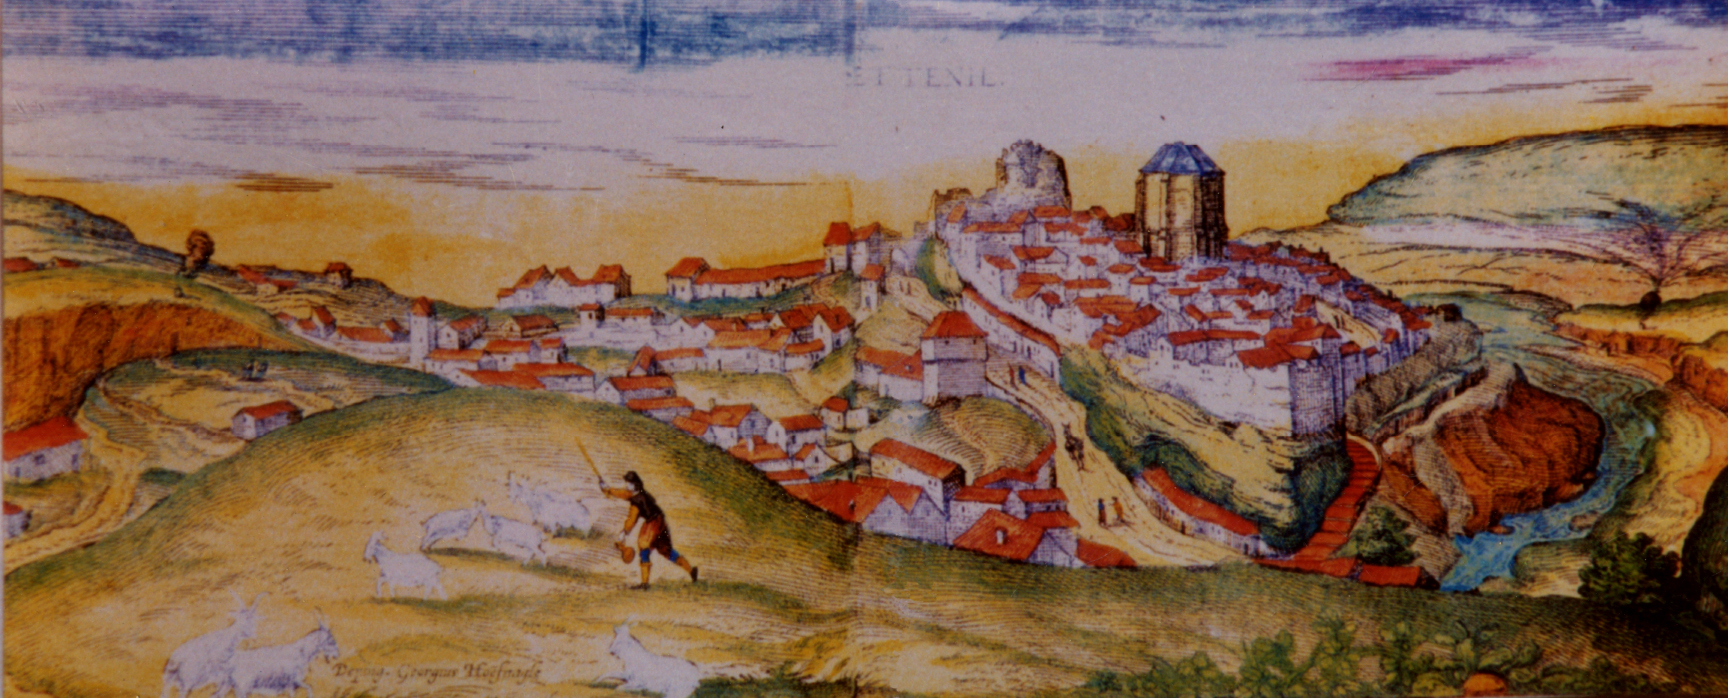 Imagen de Setenil en 1.564, realizada por el pintor flamenco Joris Hoefnagel y publicada en la obra 'Civitates Orbis Terrarum', que pretendía ser un atlas del mundo. 